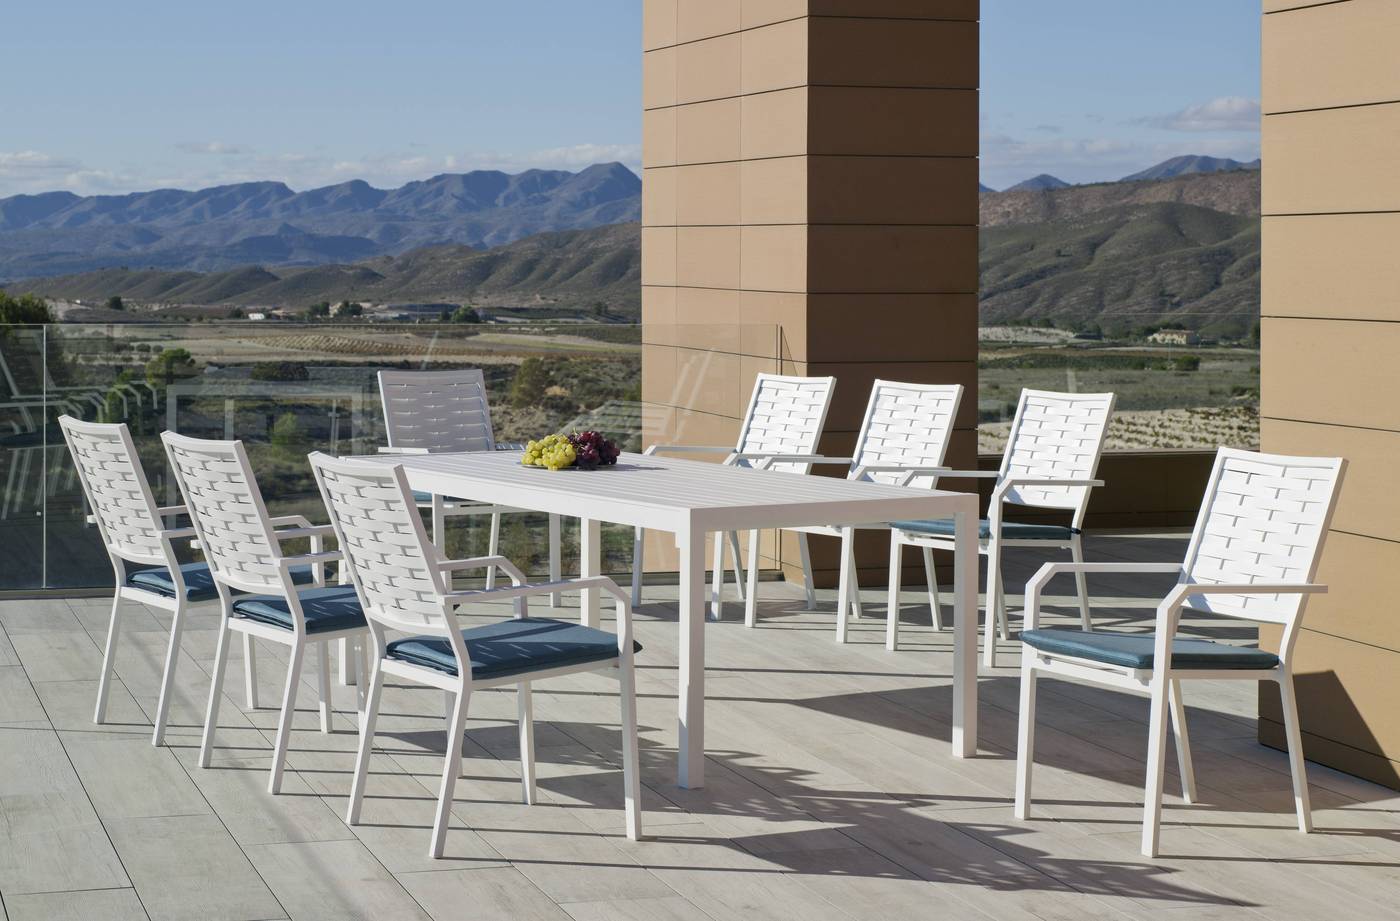 Conjunto de aluminio luxe para jardín o terraza: Mesa rectangular 200 cm. + 8 sillones. Disponible en color blanco, bronce, antracita y champagne.